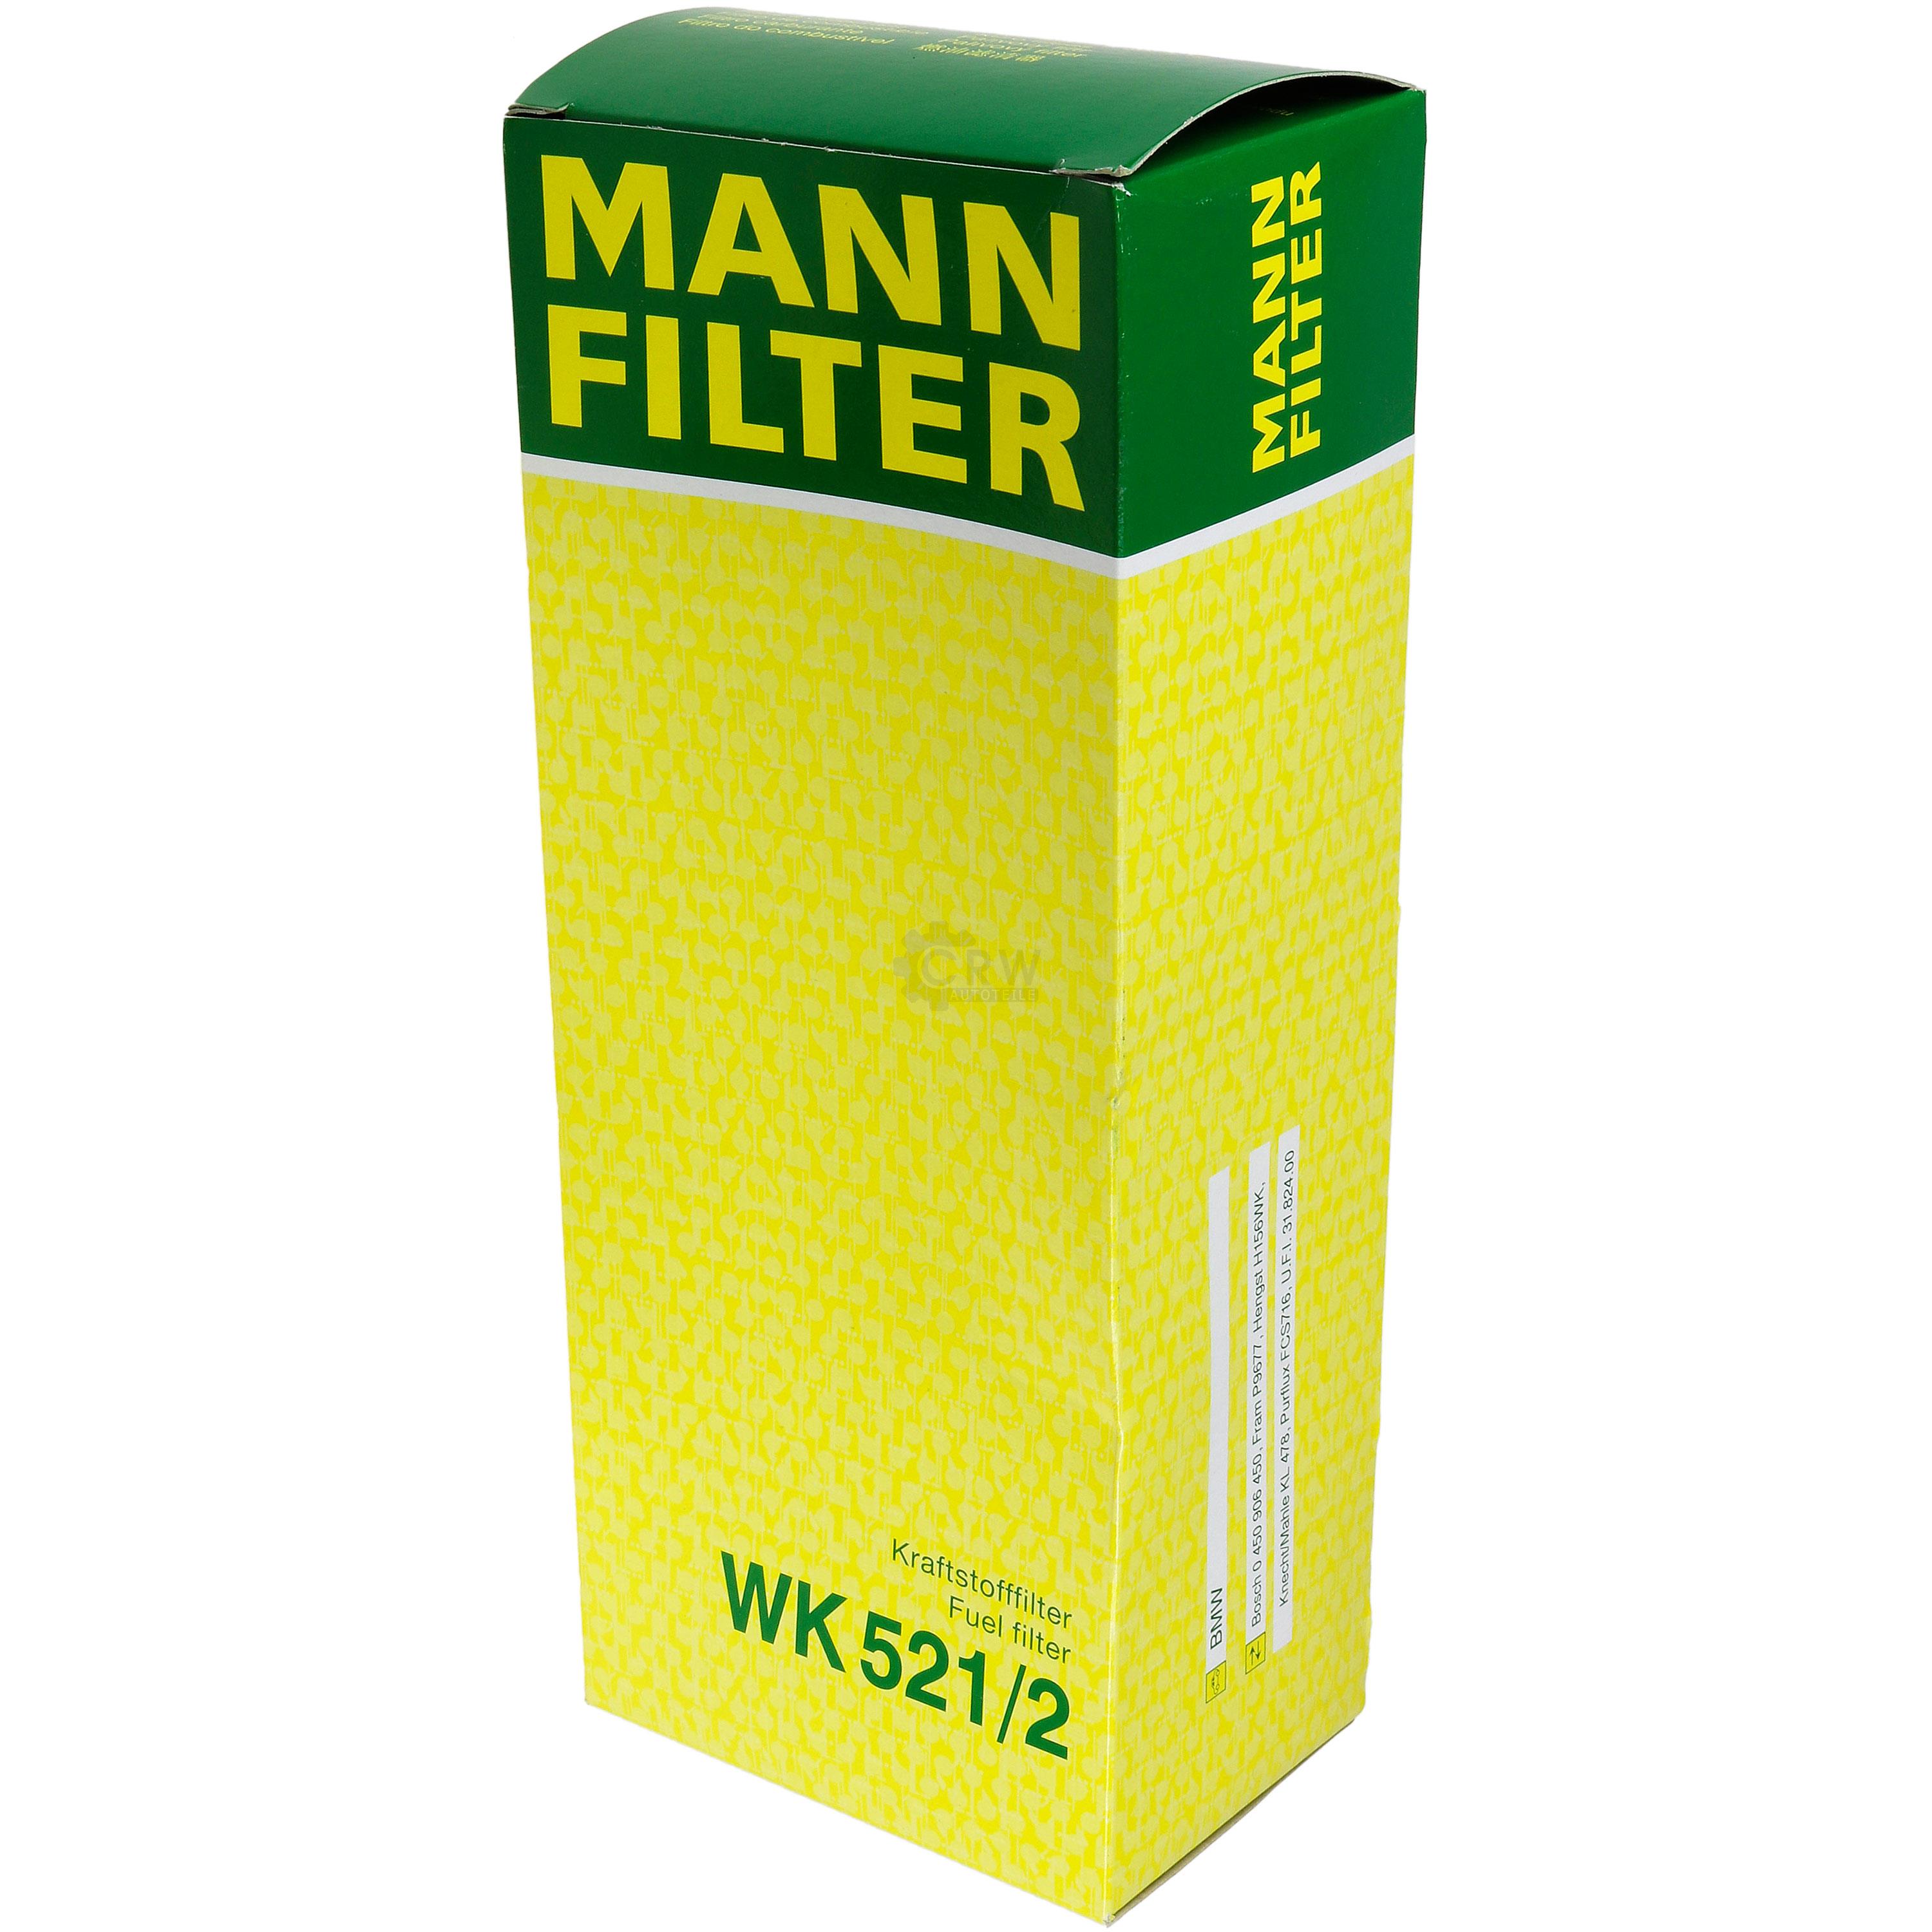 MANN-FILTER Kraftstofffilter WK 521/2 Fuel Filter